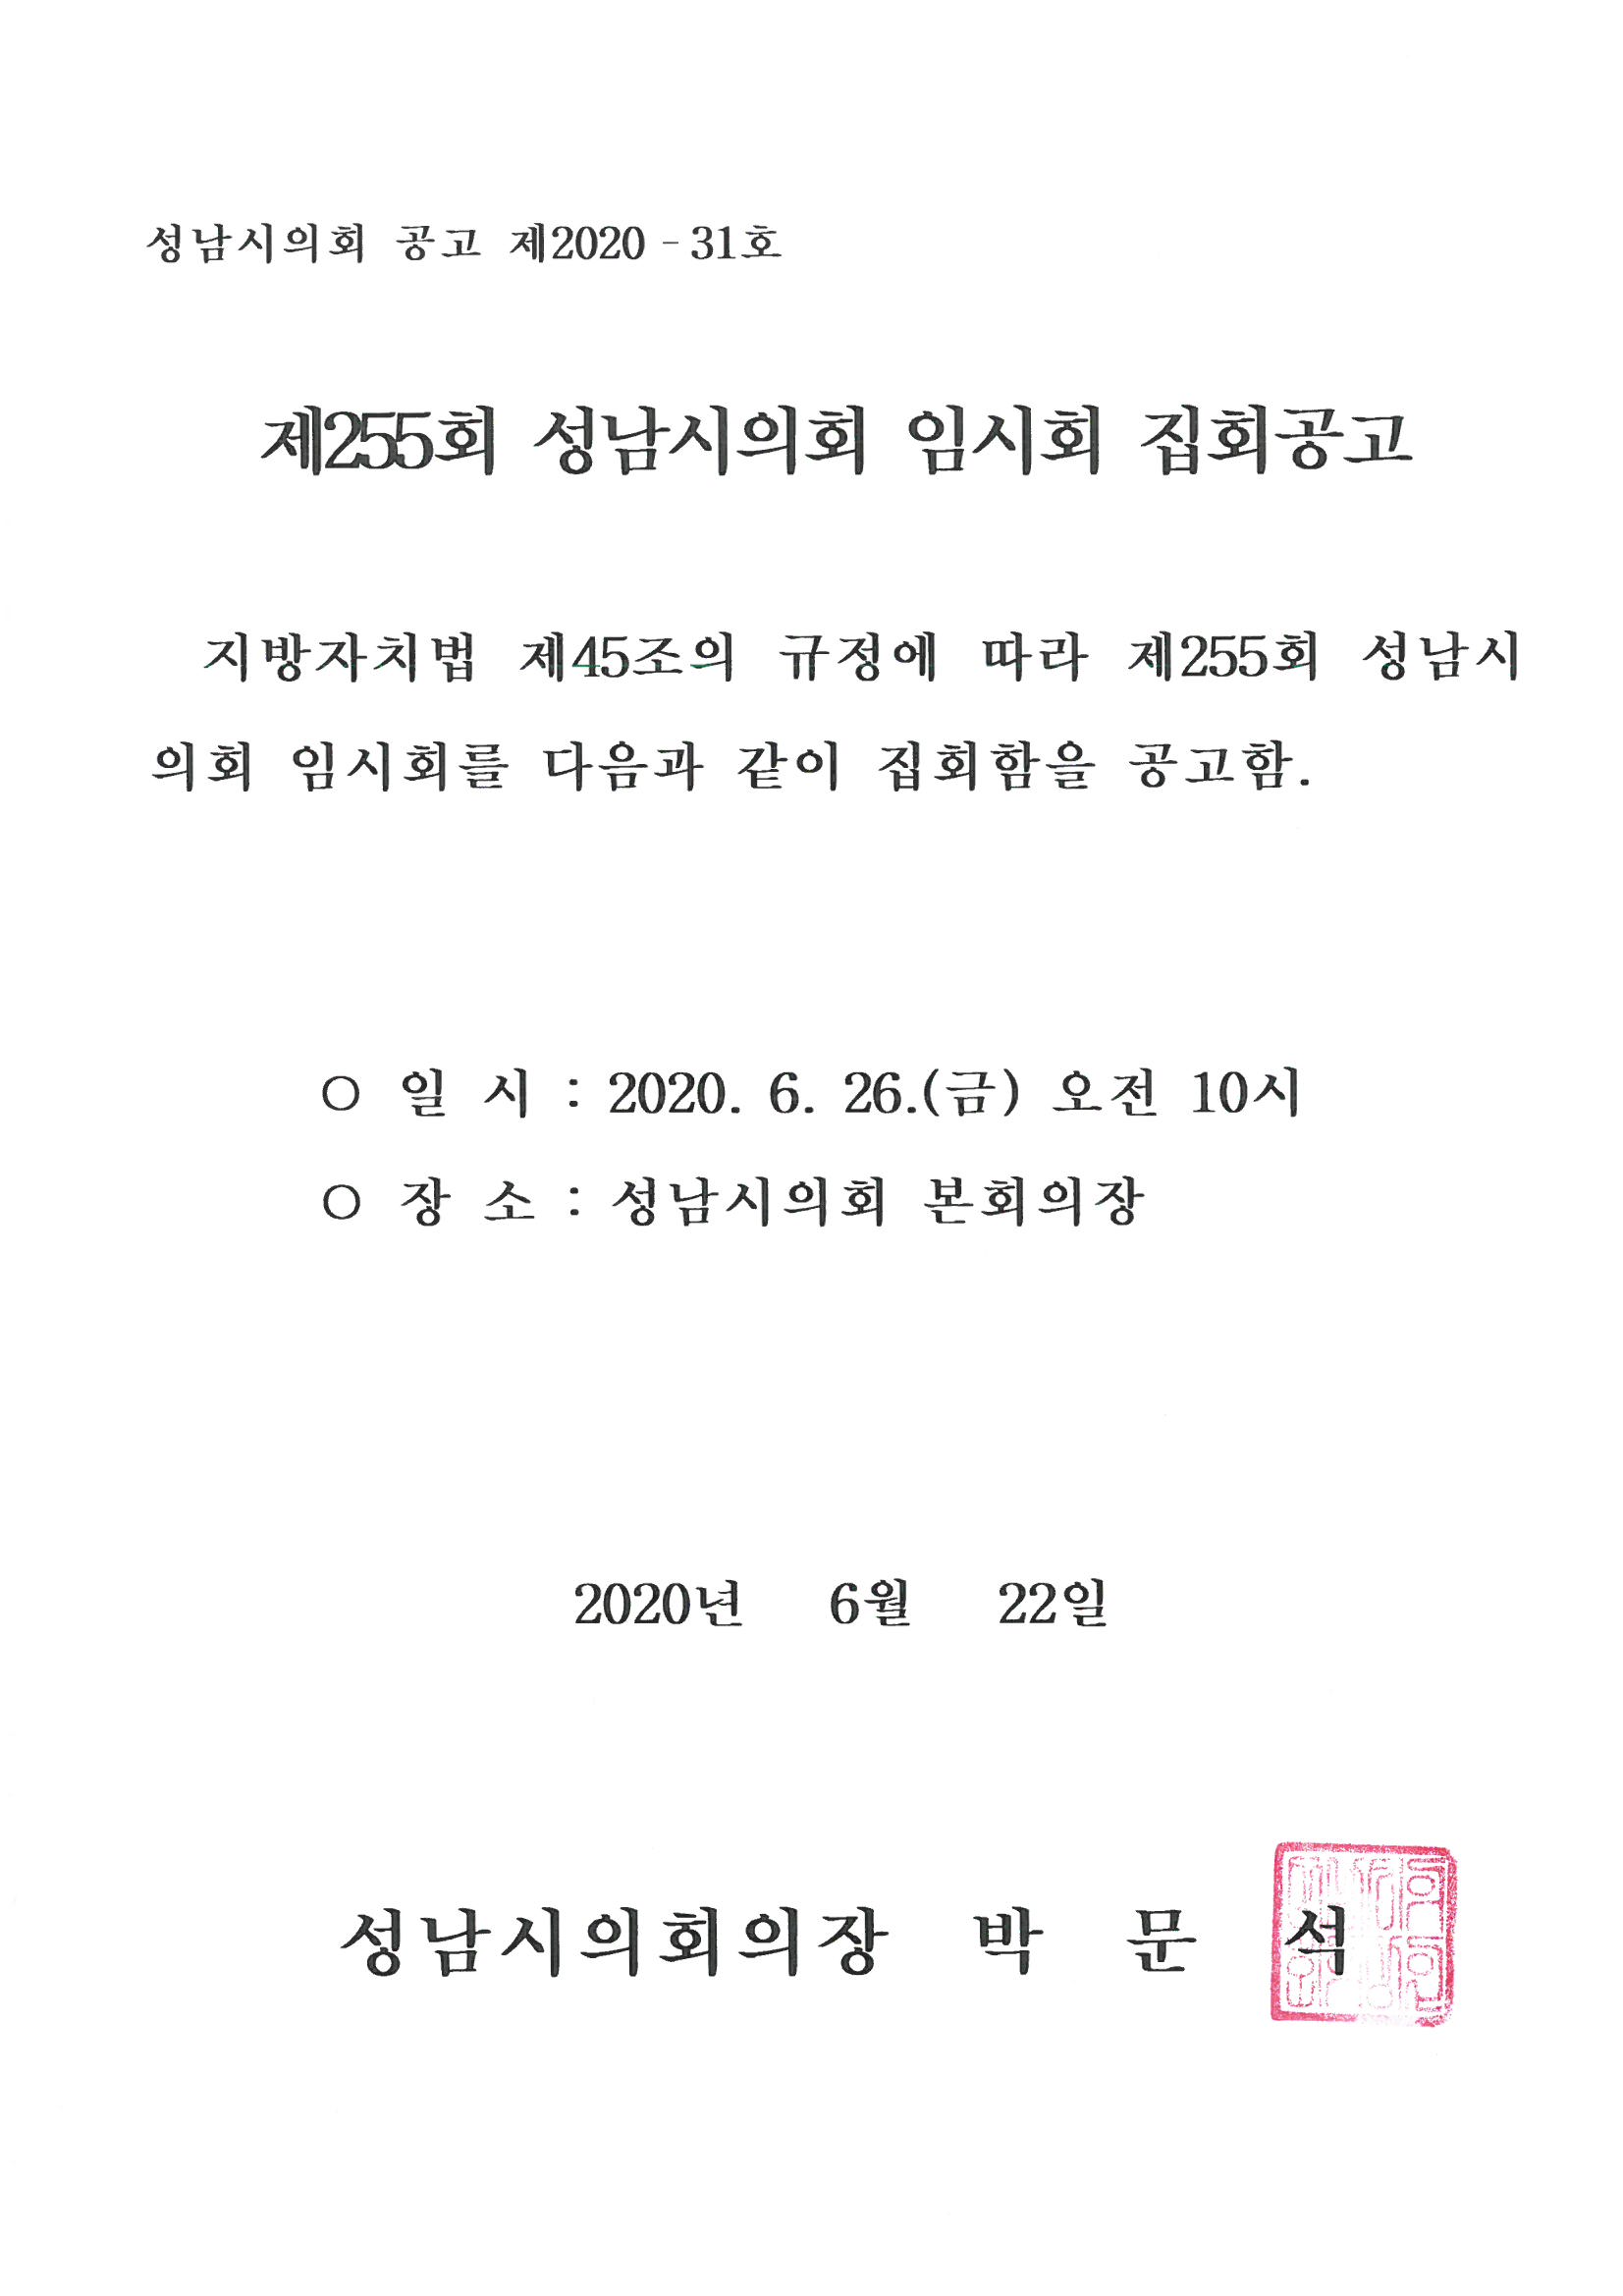 제255회 성남시의회 임시회 집회공고 - 1